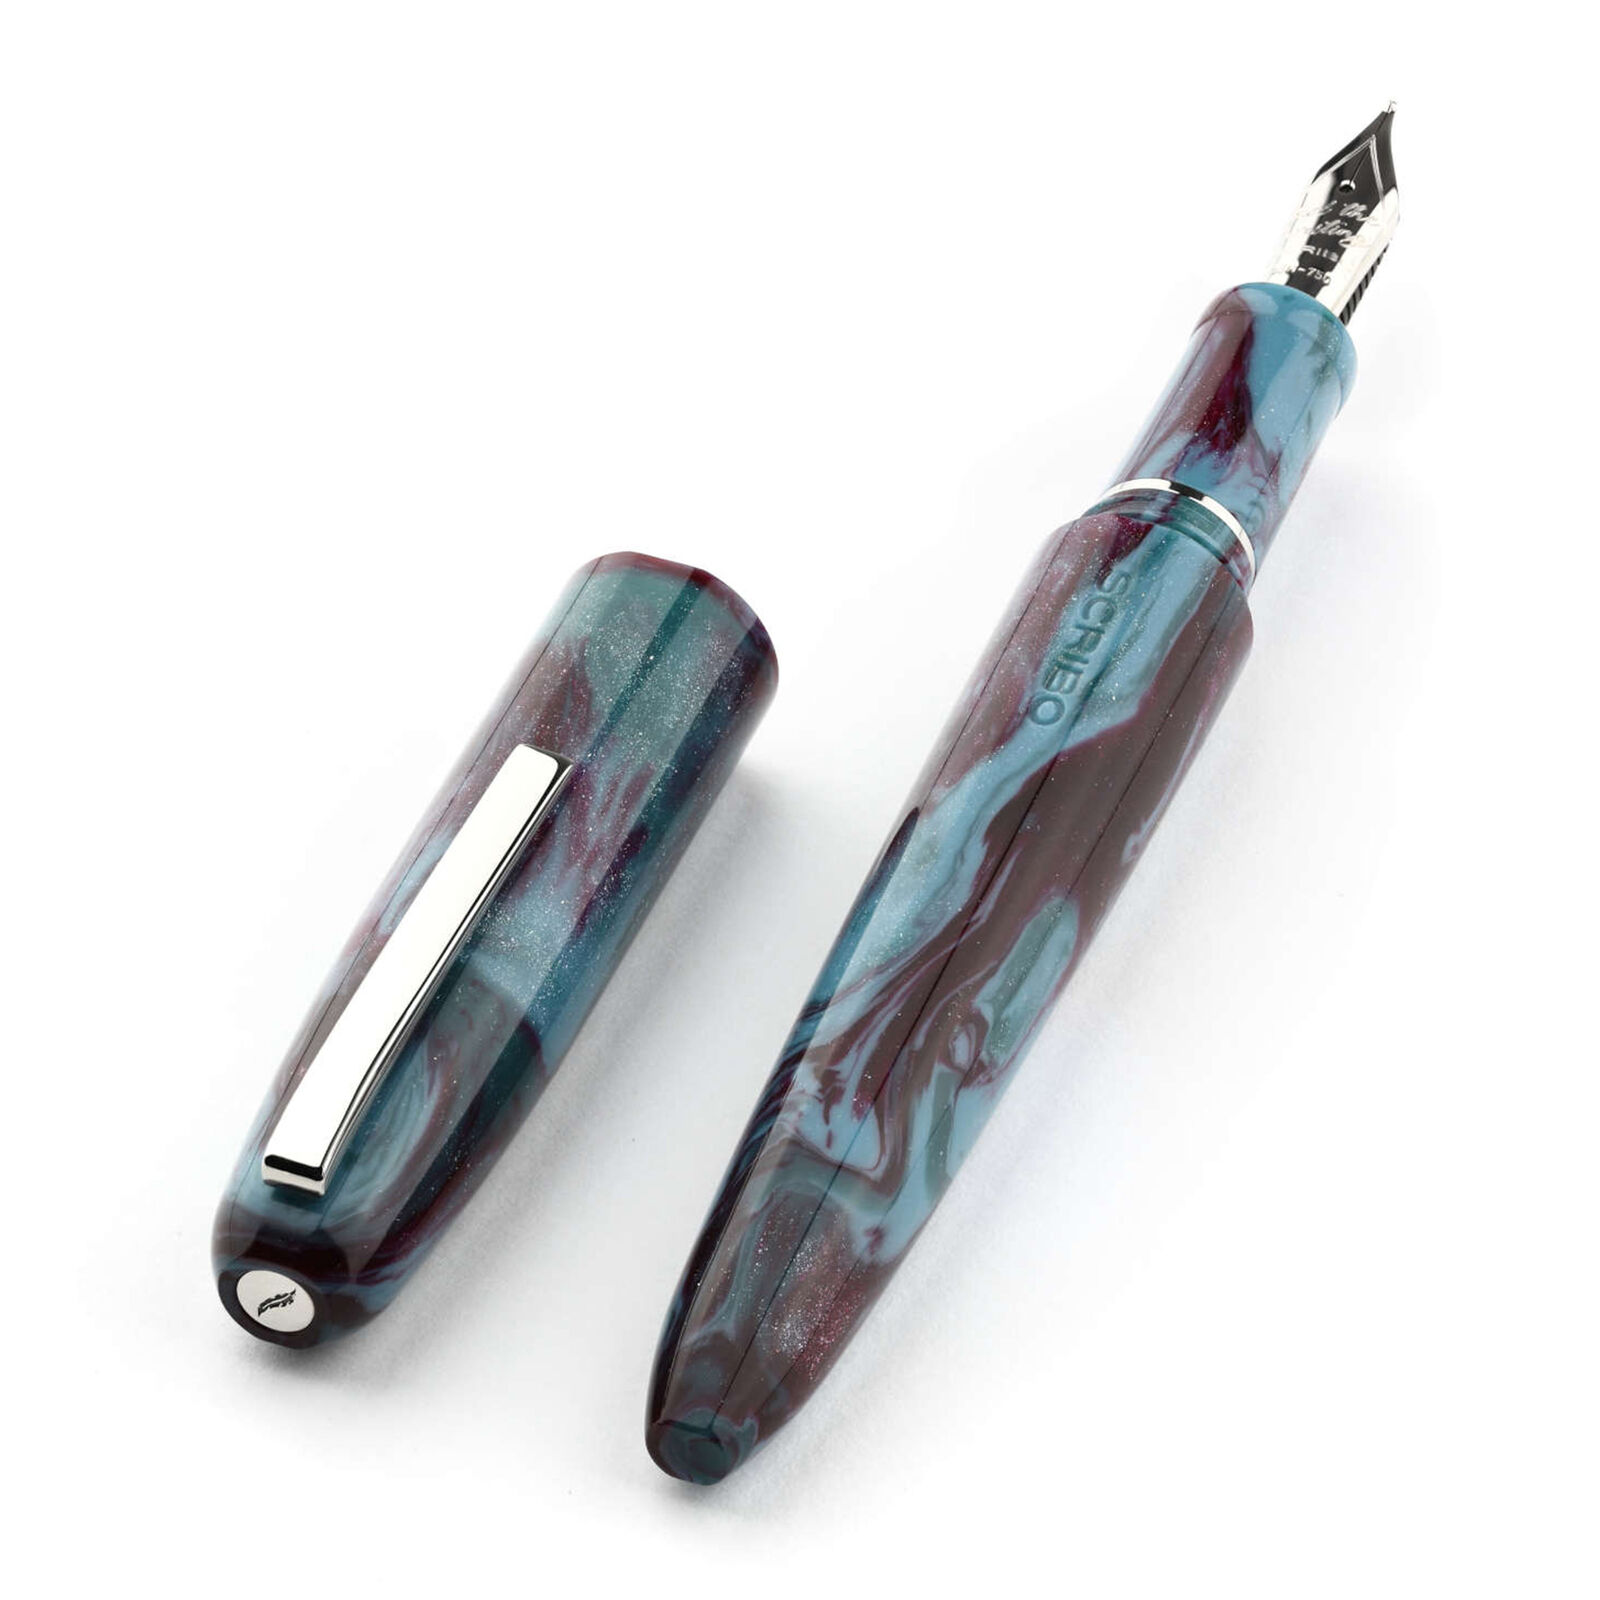 Scribo Piuma Fountain Pen in Fusione Diamondcast 18kt Nib - Extra Extra Fine Nib